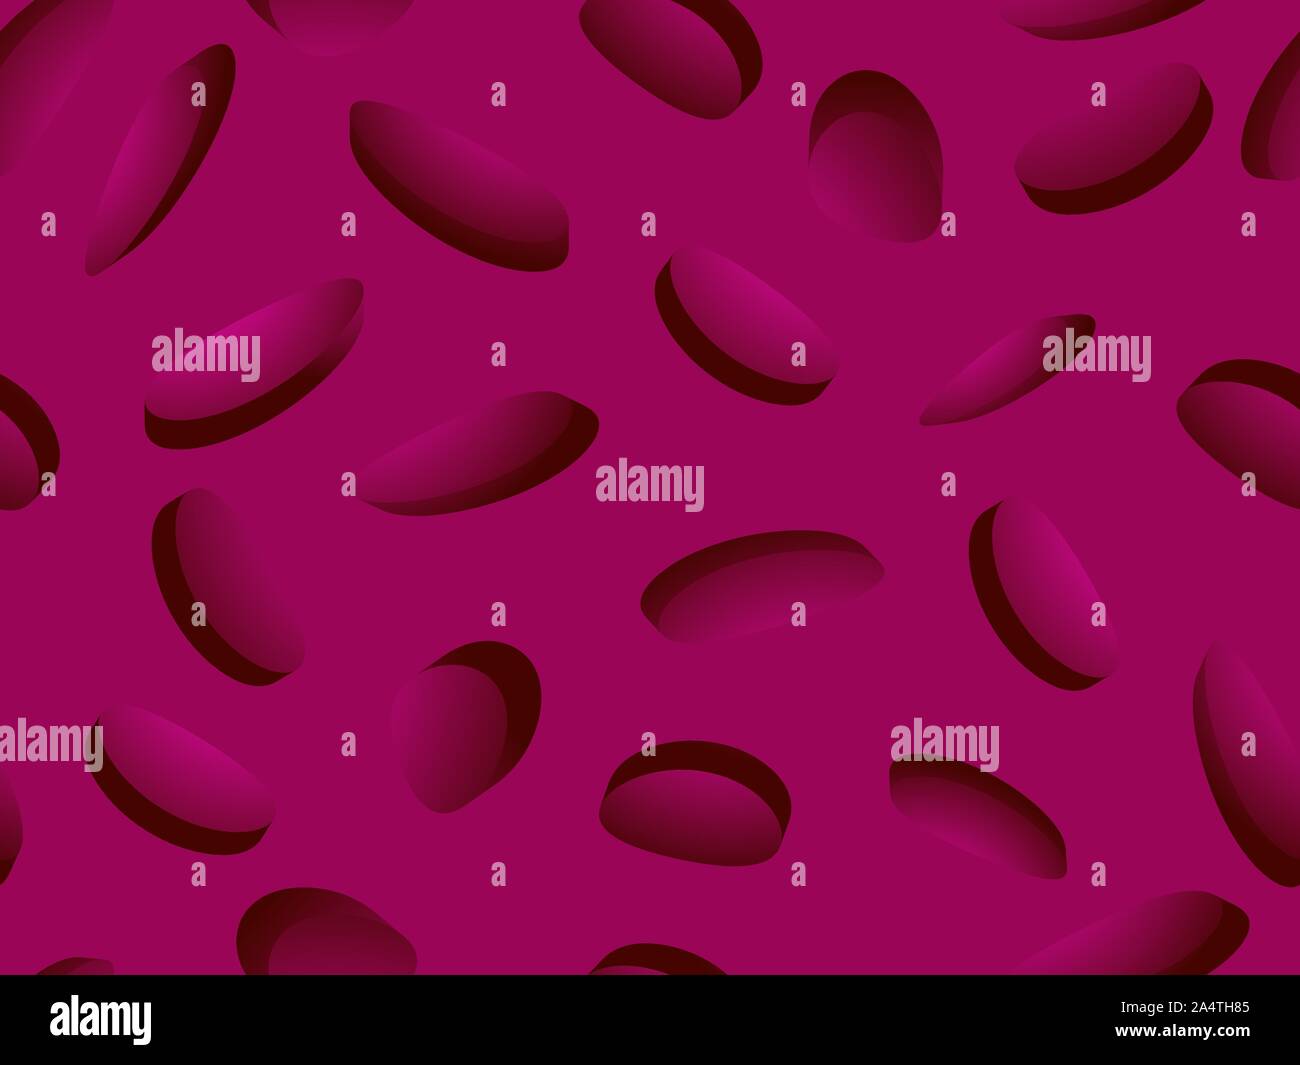 Rote Blutkörperchen nahtlose Muster. Blutgerinnsel unter dem Mikroskop, Erythrozyten, Hämoglobin Moleküle. Vector Illustration Stock Vektor